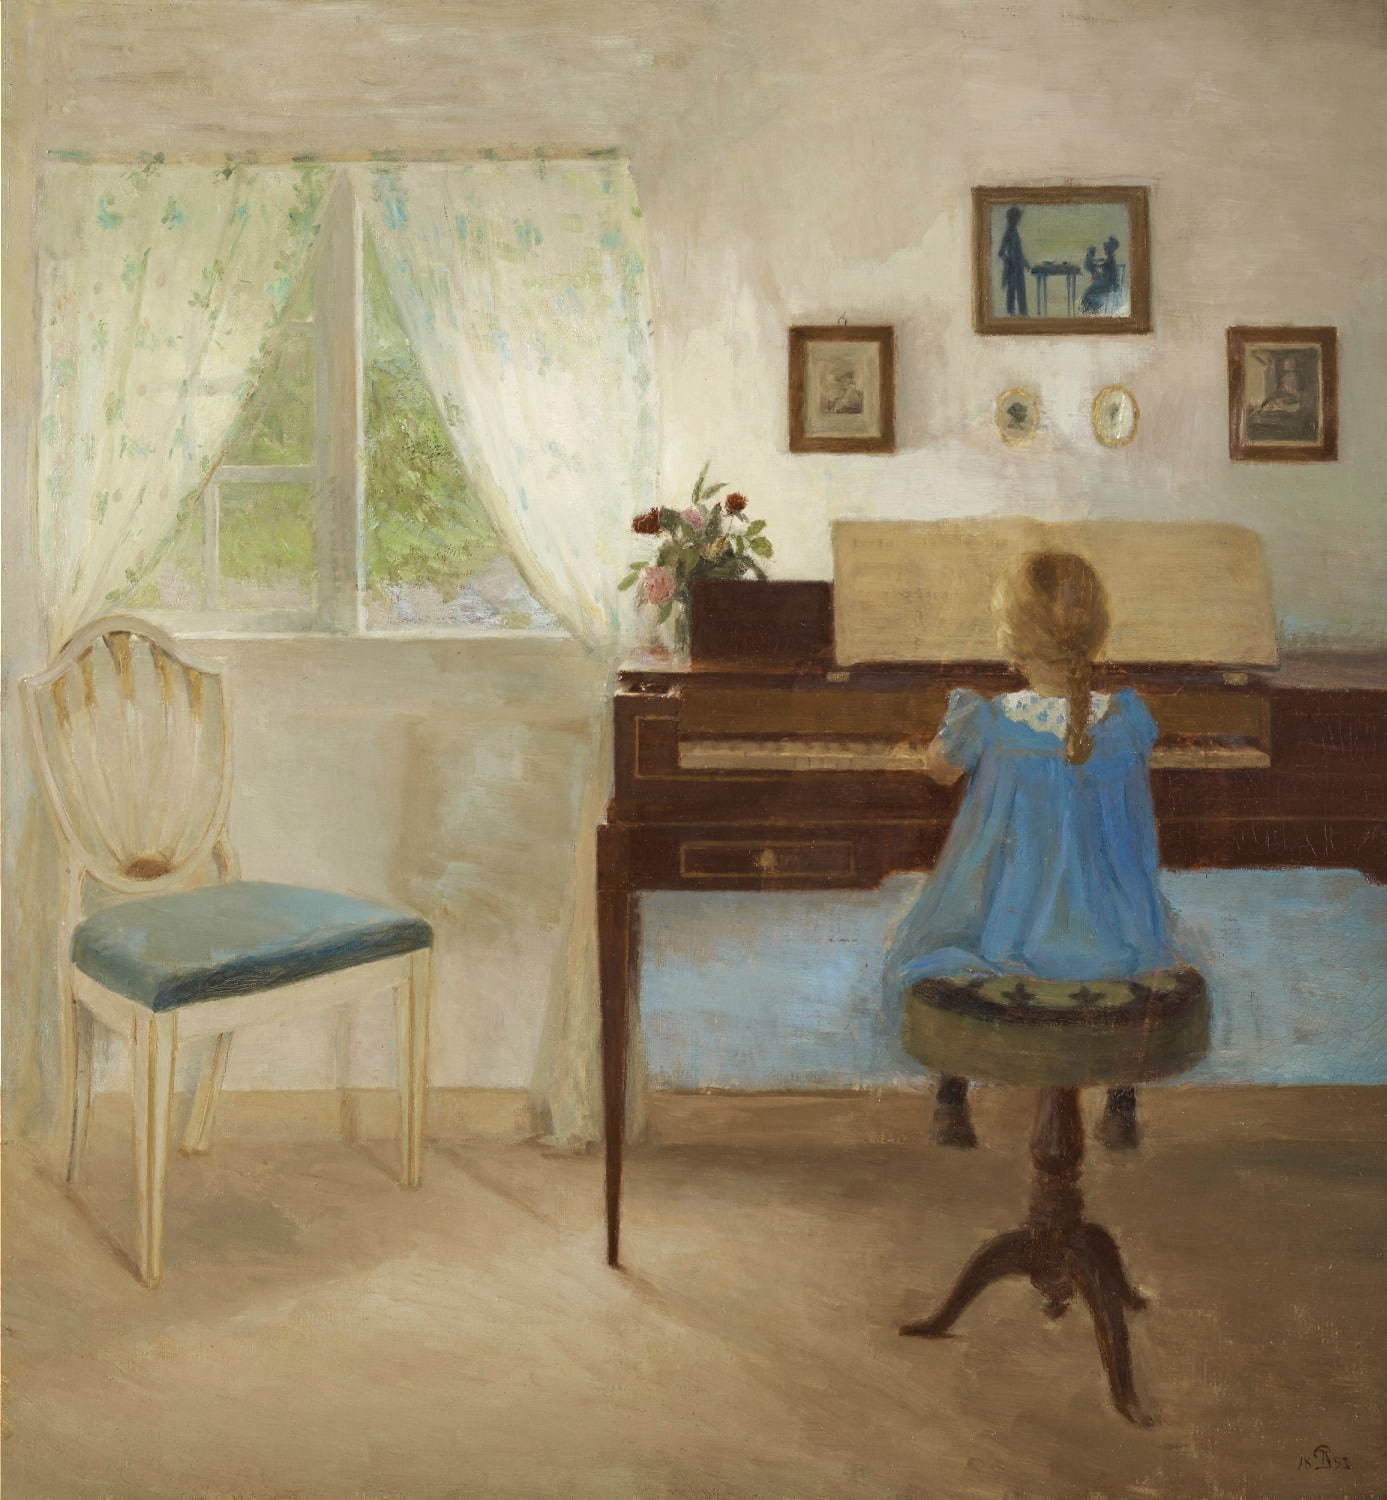 ピーダ・イルステズ 《ピアノに向かう少女》 1897年 アロス・オーフース美術館蔵
ARoS Arhus Kunstmuseum / © Photo: Ole Hein Pedersen